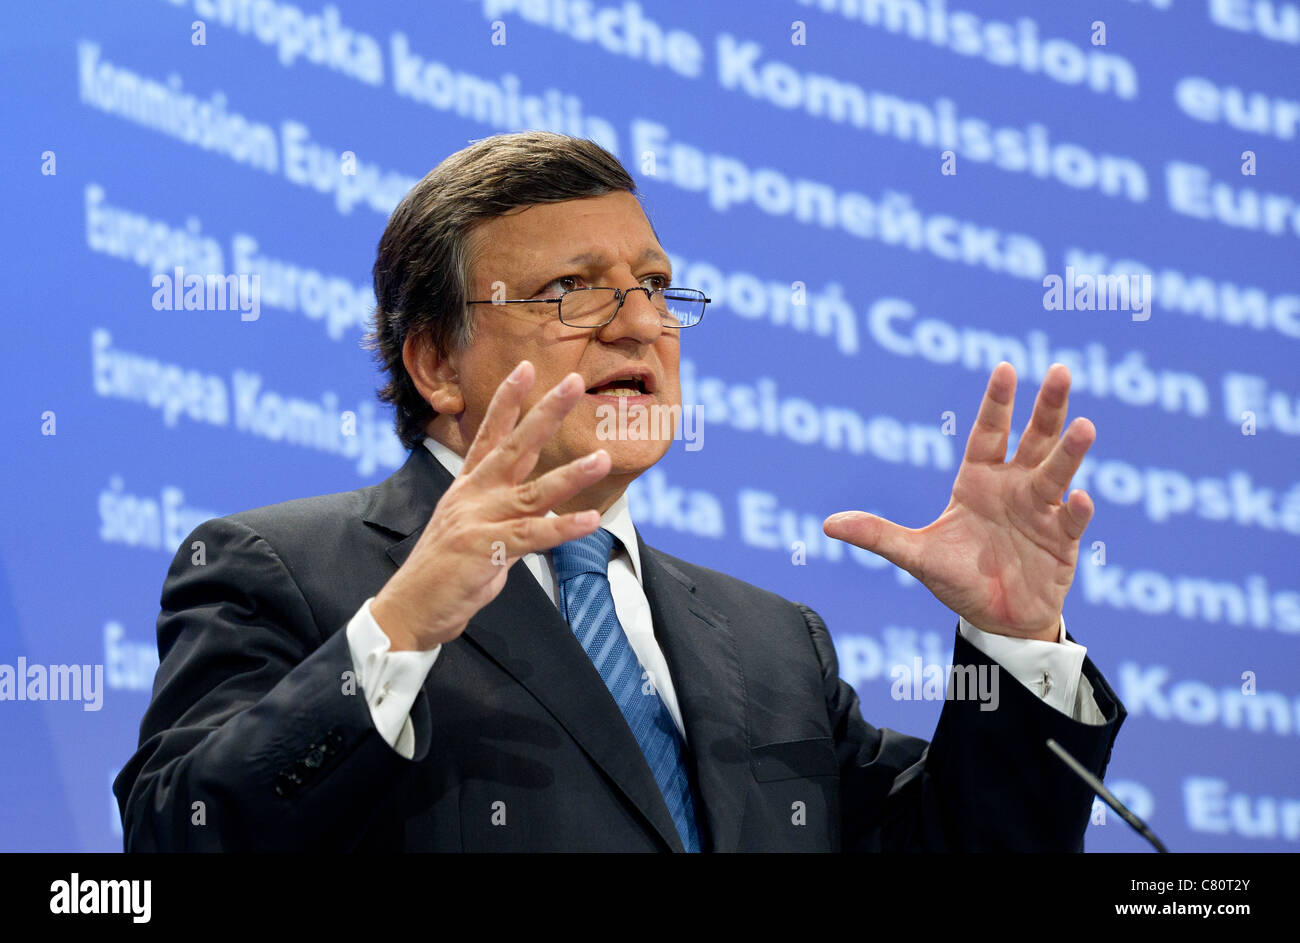 EU-Kommissionspräsident Jose Manuel Barroso anlässlich der Europäischen Kommission in Brüssel Stockfoto